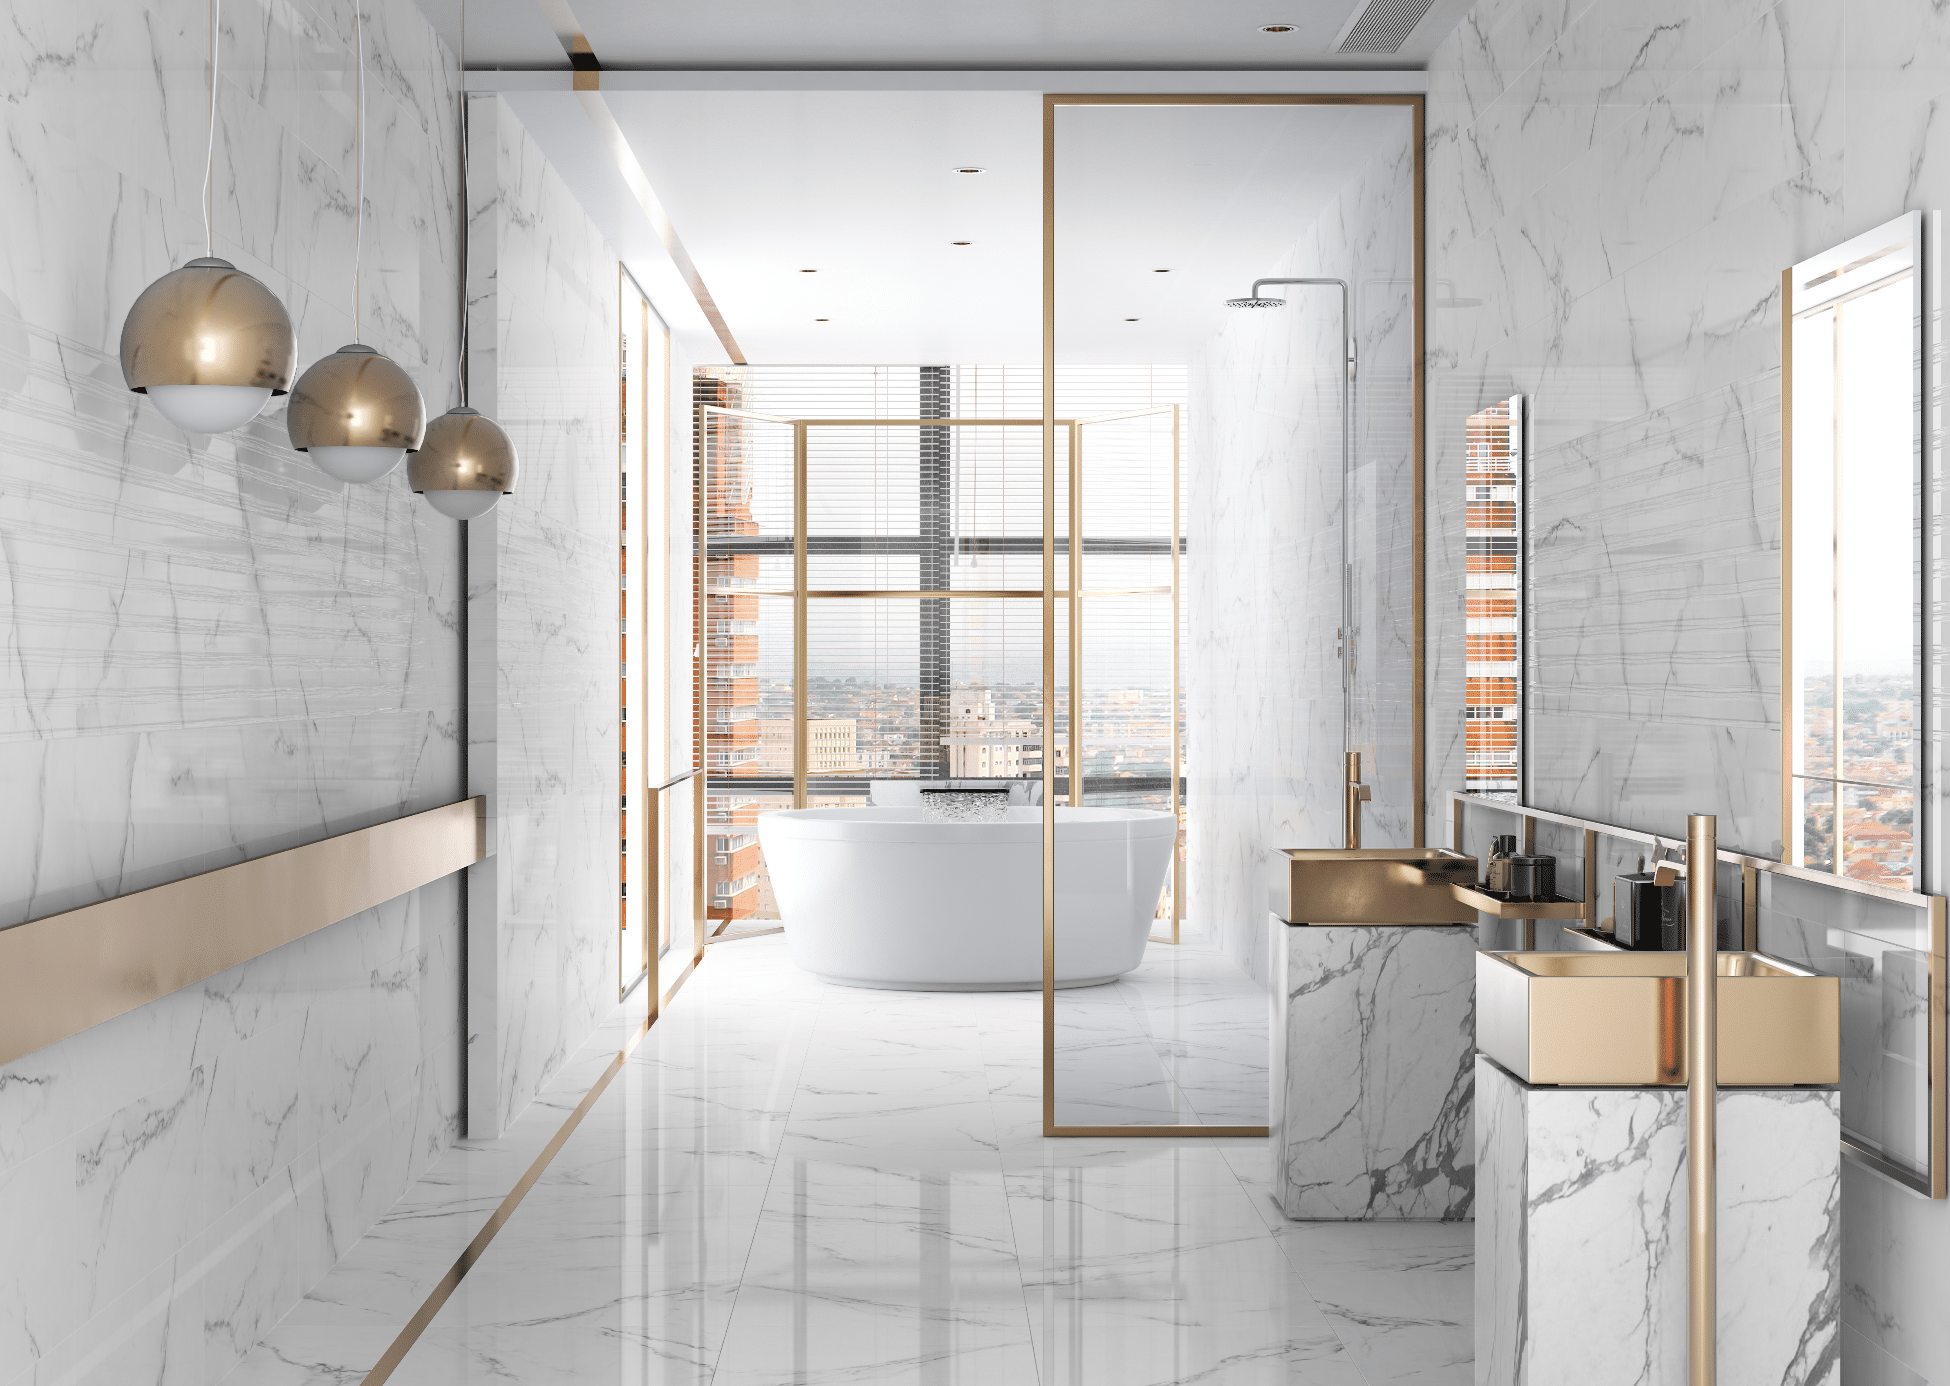 C. Bergmann zeigt ein marmoriert gefliestes Badezimmer in weiss und schwarz mit goldenen Waschtischen und einer weissen freistehenden Badewanne von Argenta Ceramica.